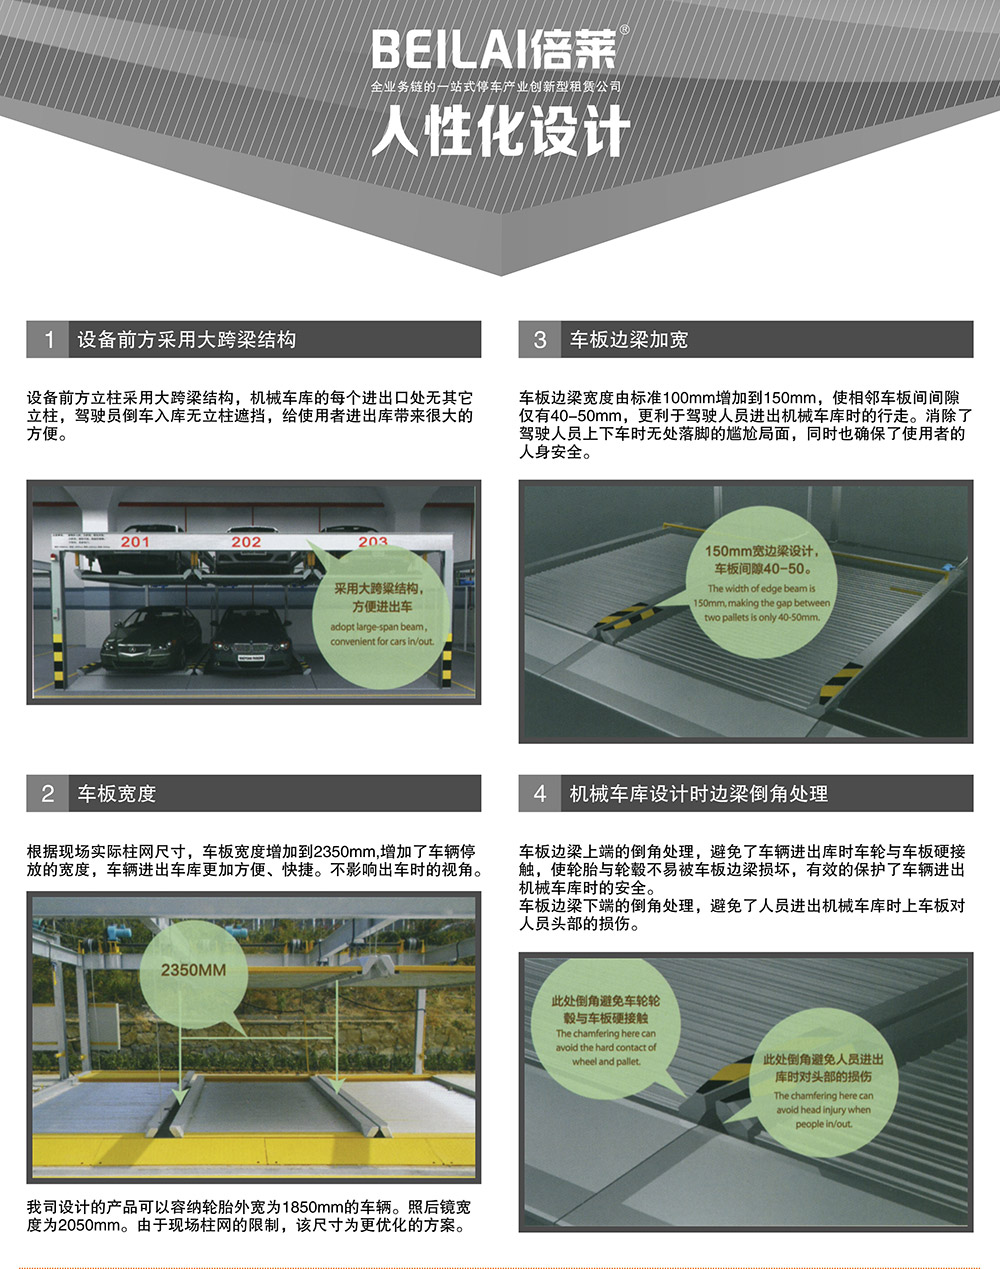 四川成都负一正一地坑PSH2D1二层升降横移立体停车设备人性化设计.jpg